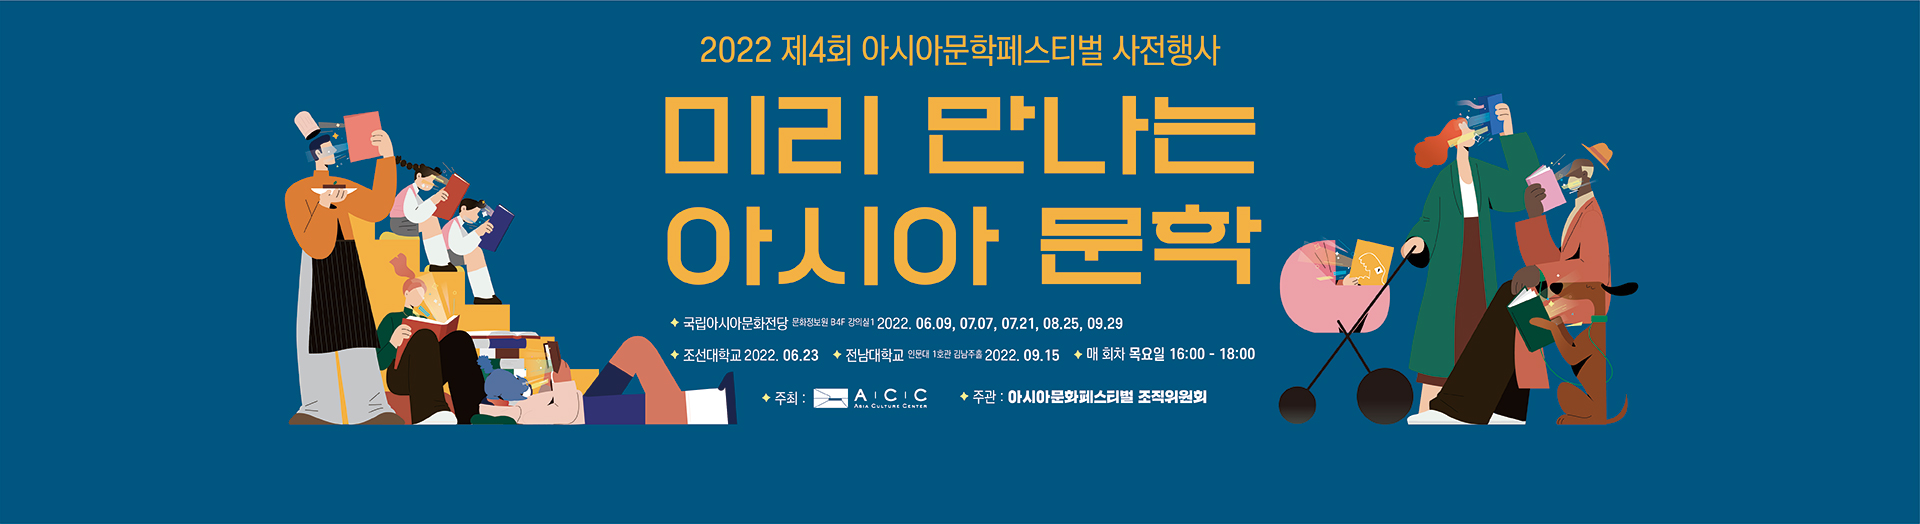 2022 Asia Literature Festival - Pre-Festival Event:: “Asia Literature Preview